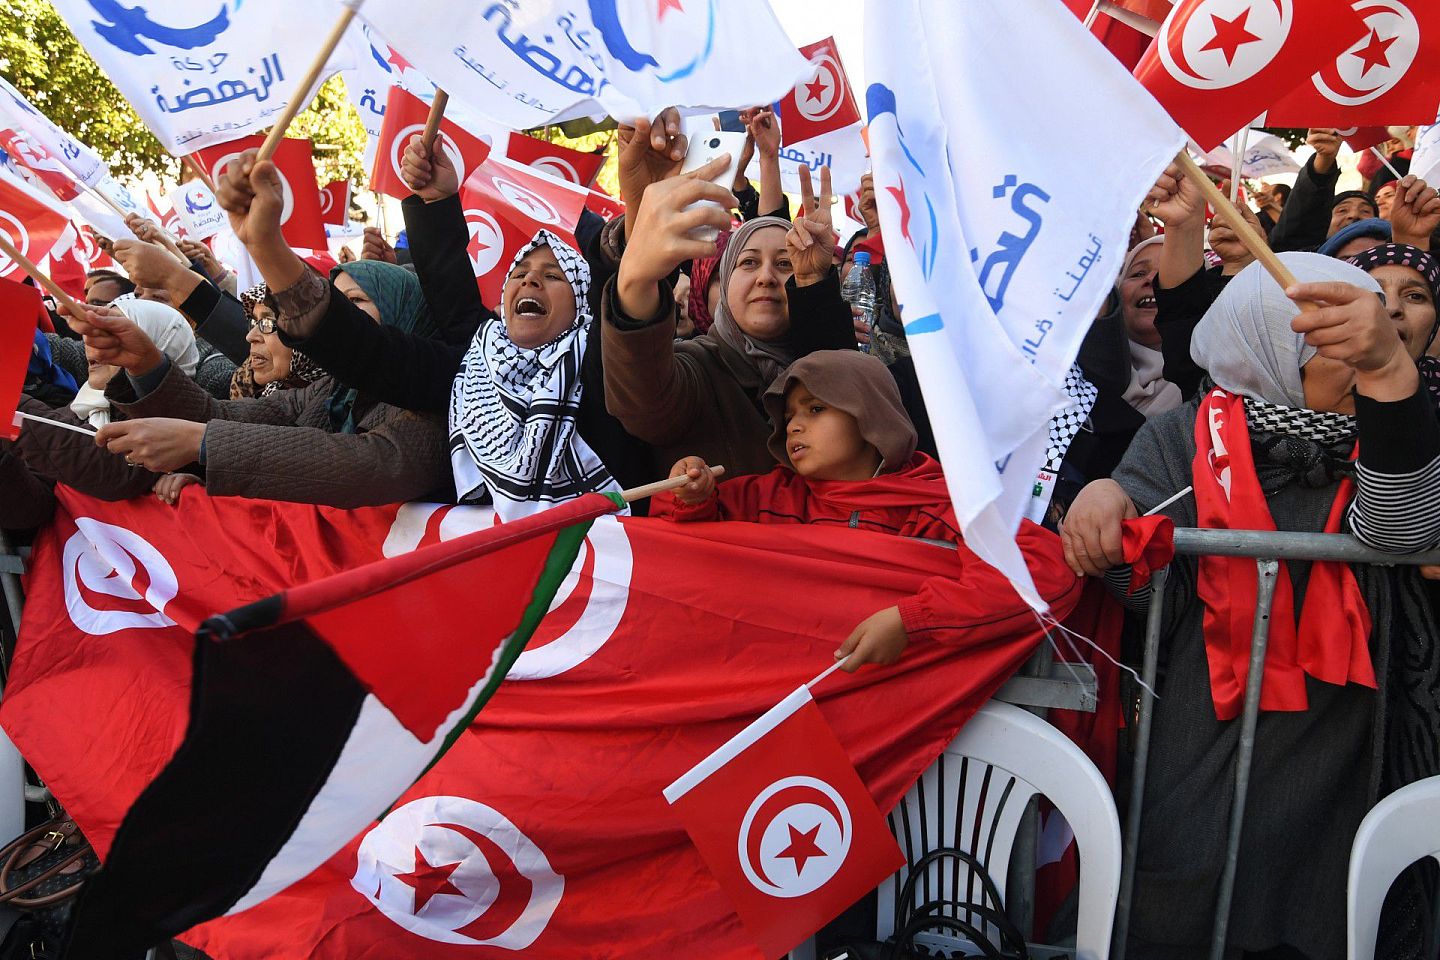 2011年突尼斯爆发茉莉花革命，并推翻本阿里（Zine El-Abidine Ben Ali）政权后，与兄弟会关系密切的「复兴运动党」（Ennahda）终于被允许筹组政党。(AFP)